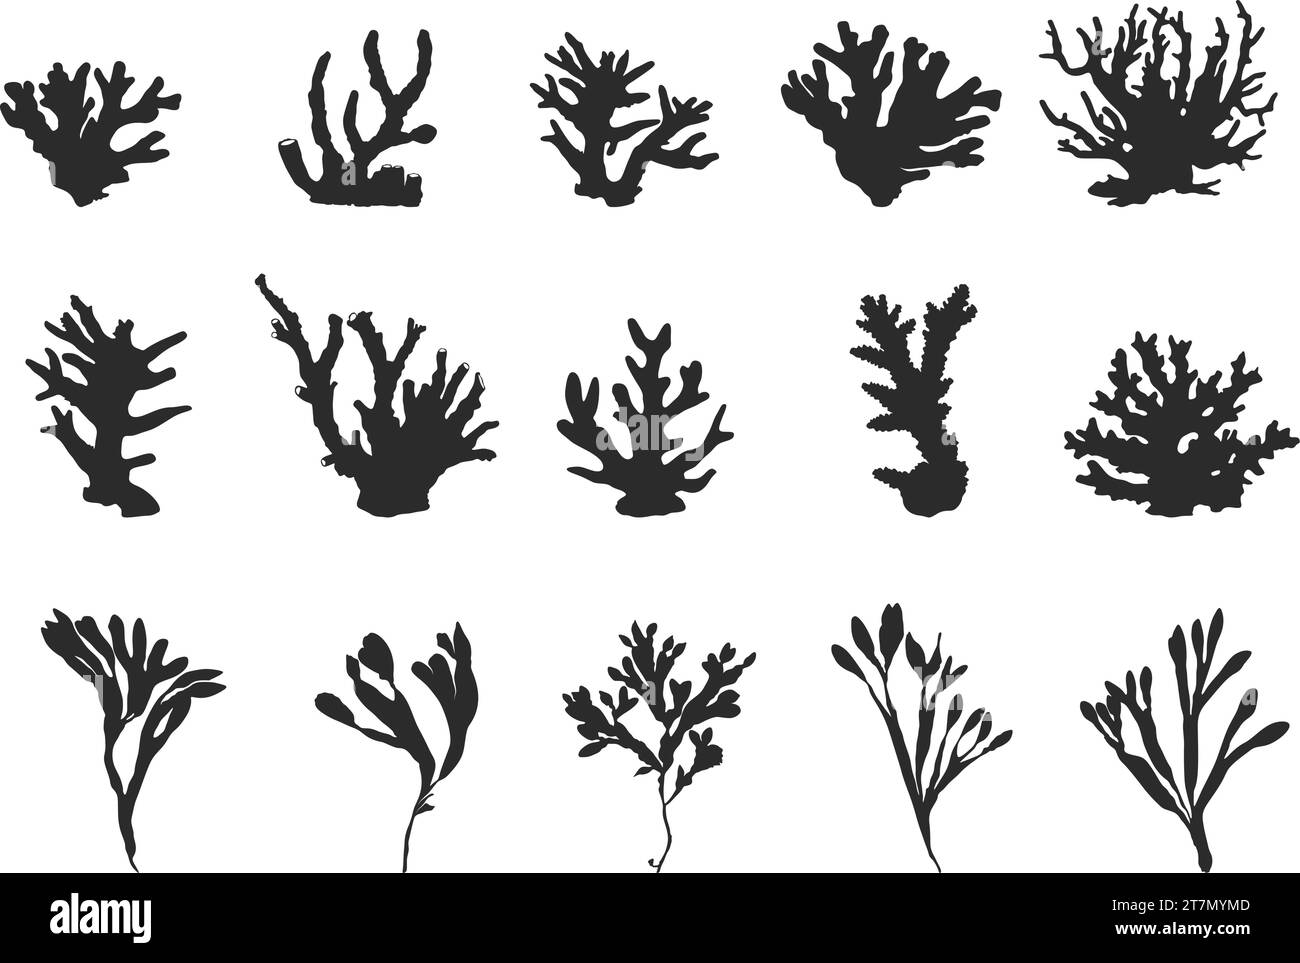 Silhouette di corallo, silhouette di coralli marini, silhouette di alghe marine, clipart di corallo, illustrazione vettoriale di corallo. Illustrazione Vettoriale